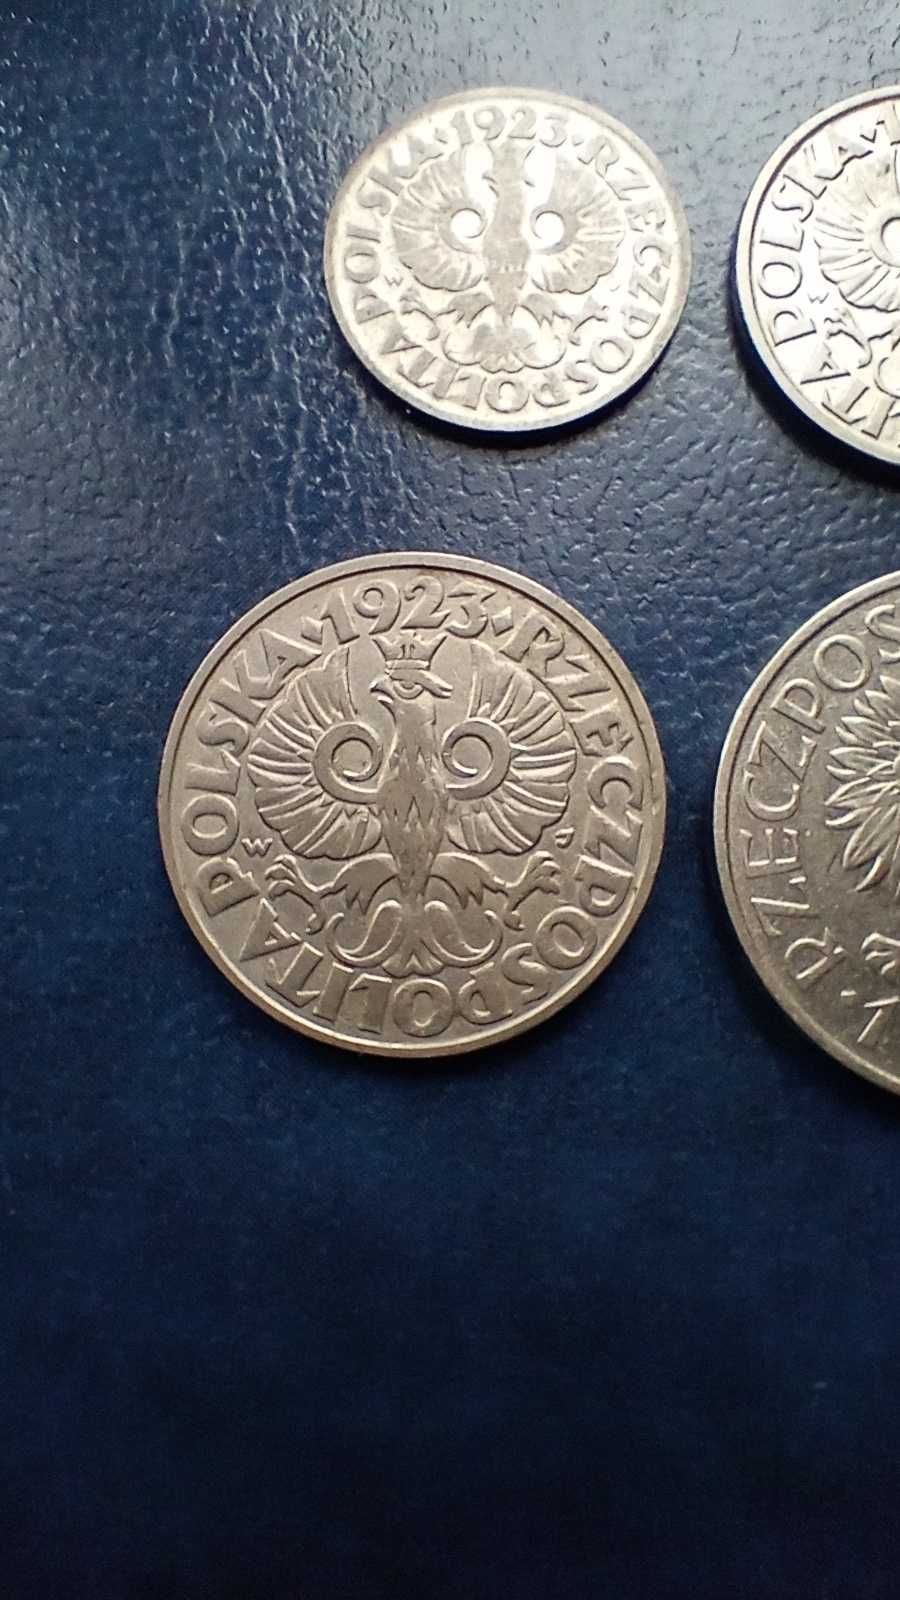 Stare monety Zestaw 4 monet 10 gr 20 gr 50 gr 1923 i 1 zł 1929 2RP